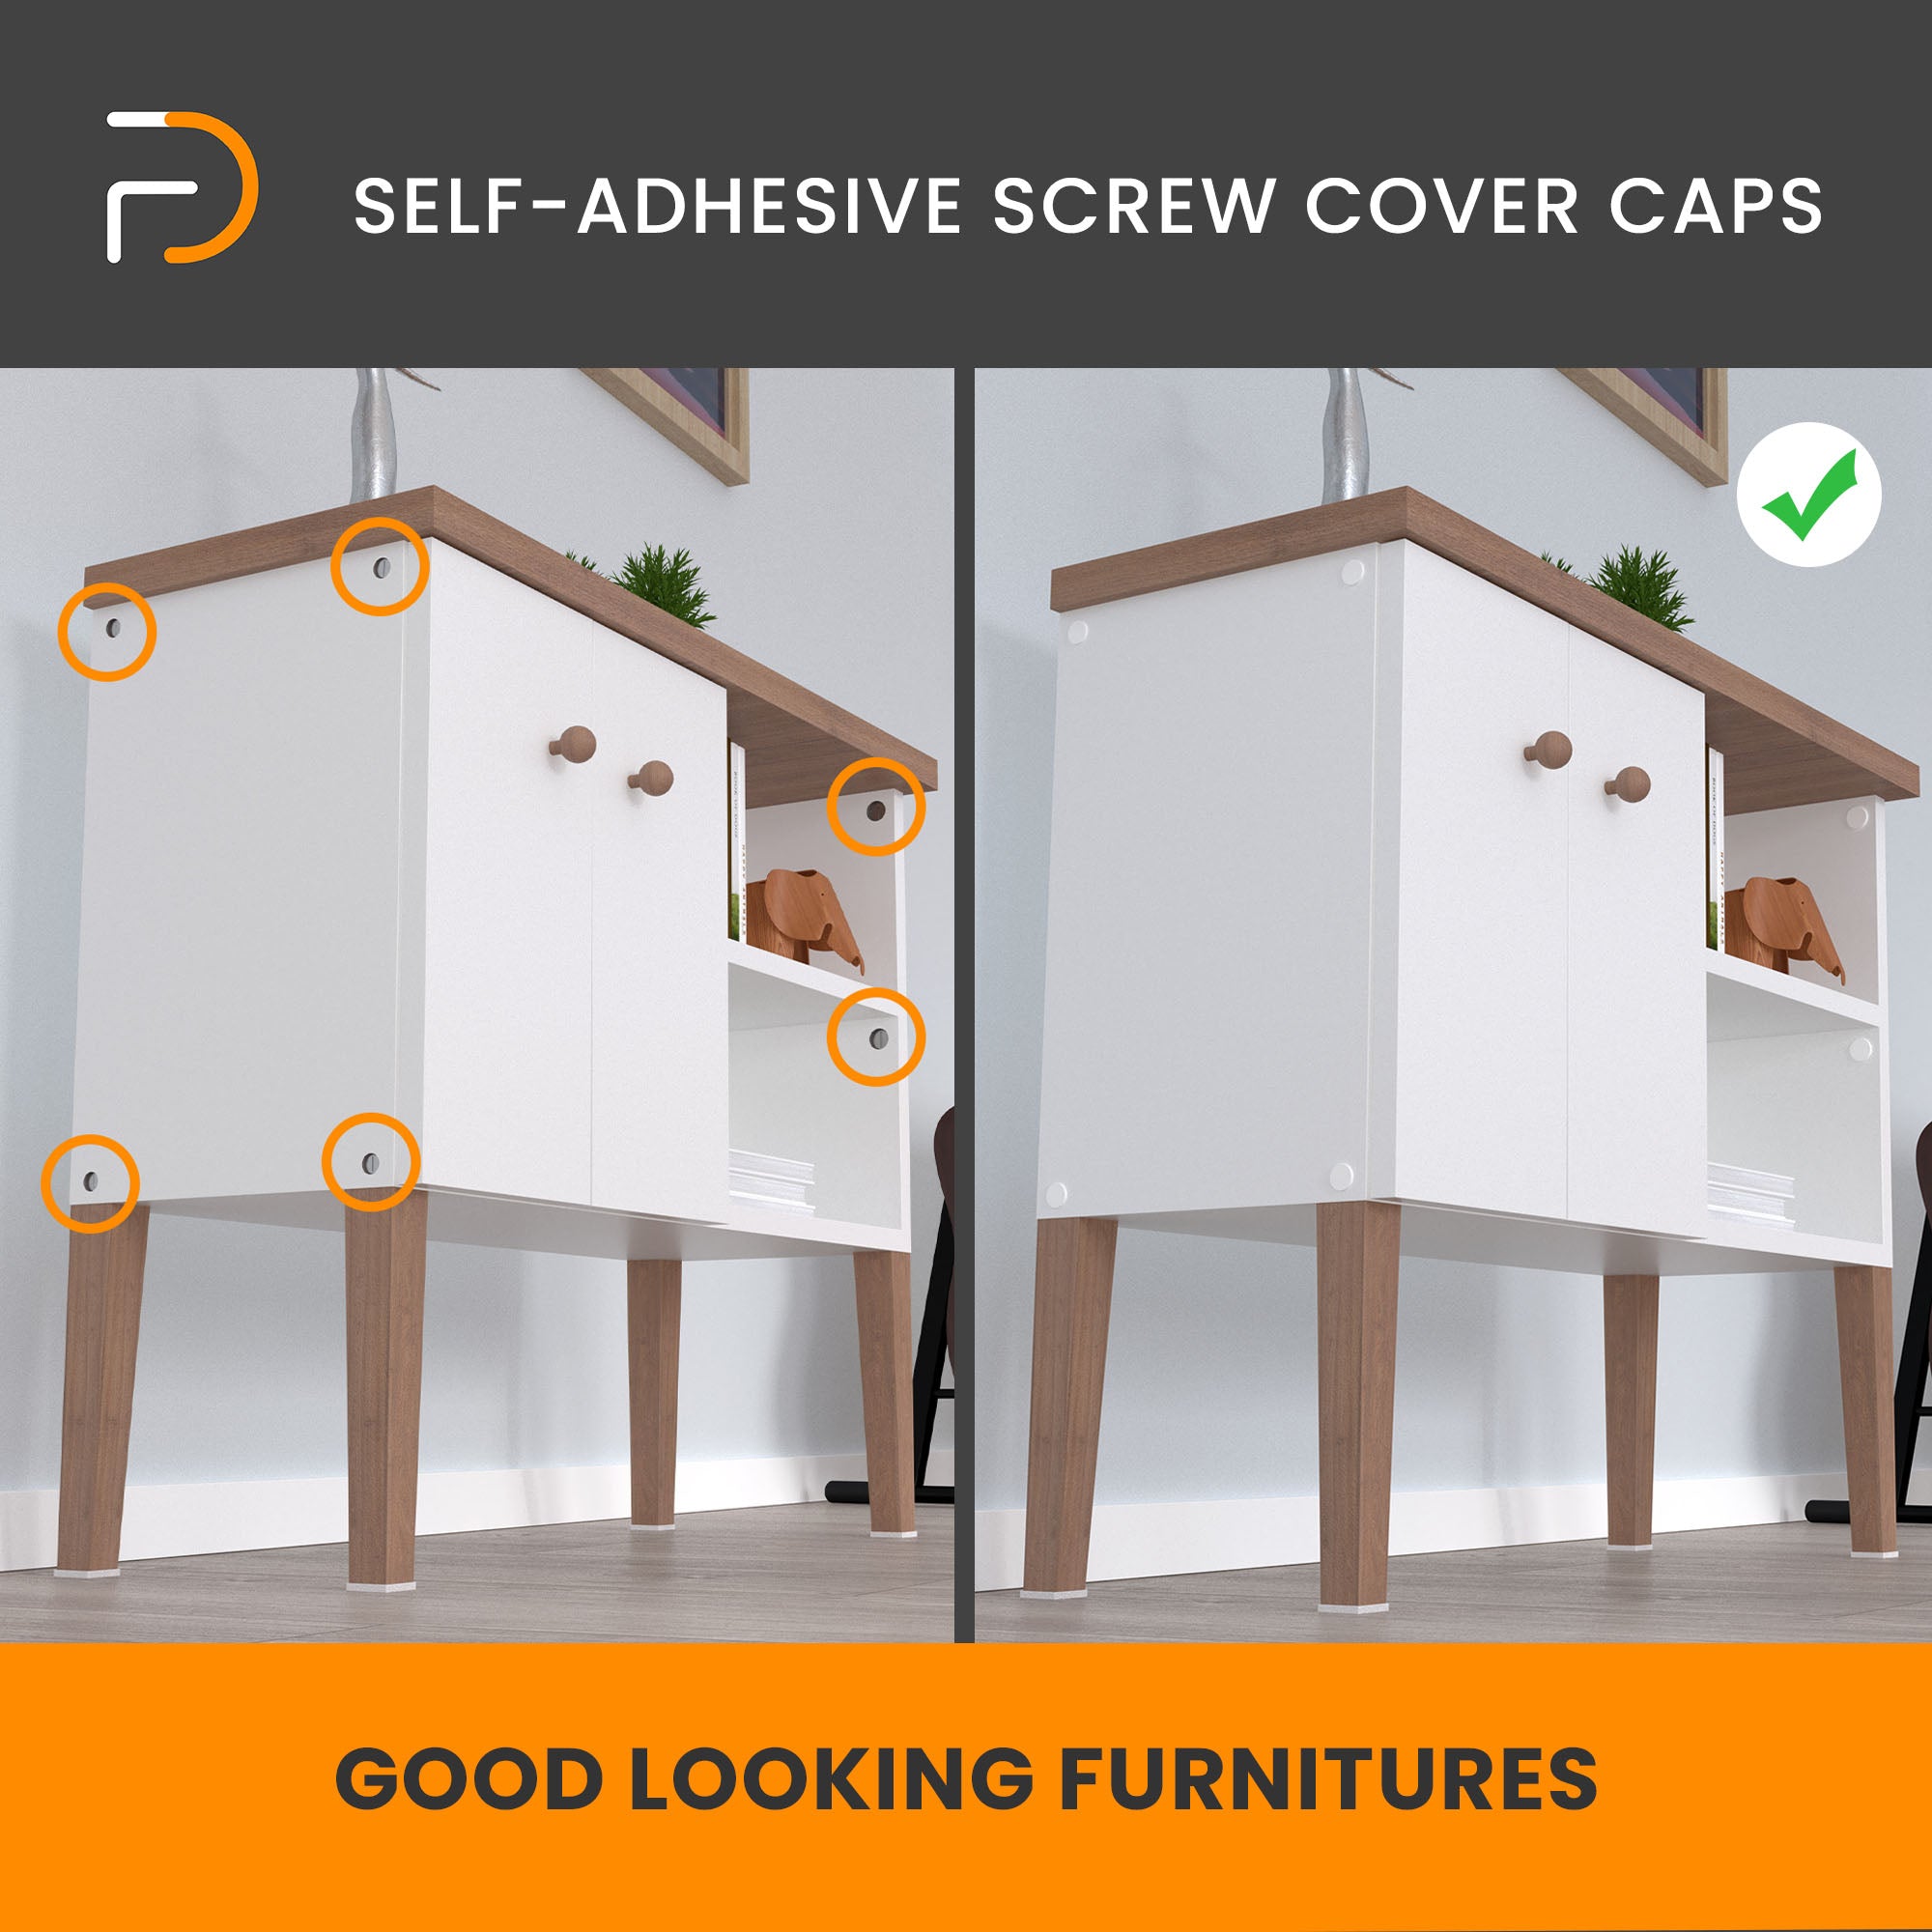 Furndiy Self-Adhesive Screw Cover Caps (Maple)